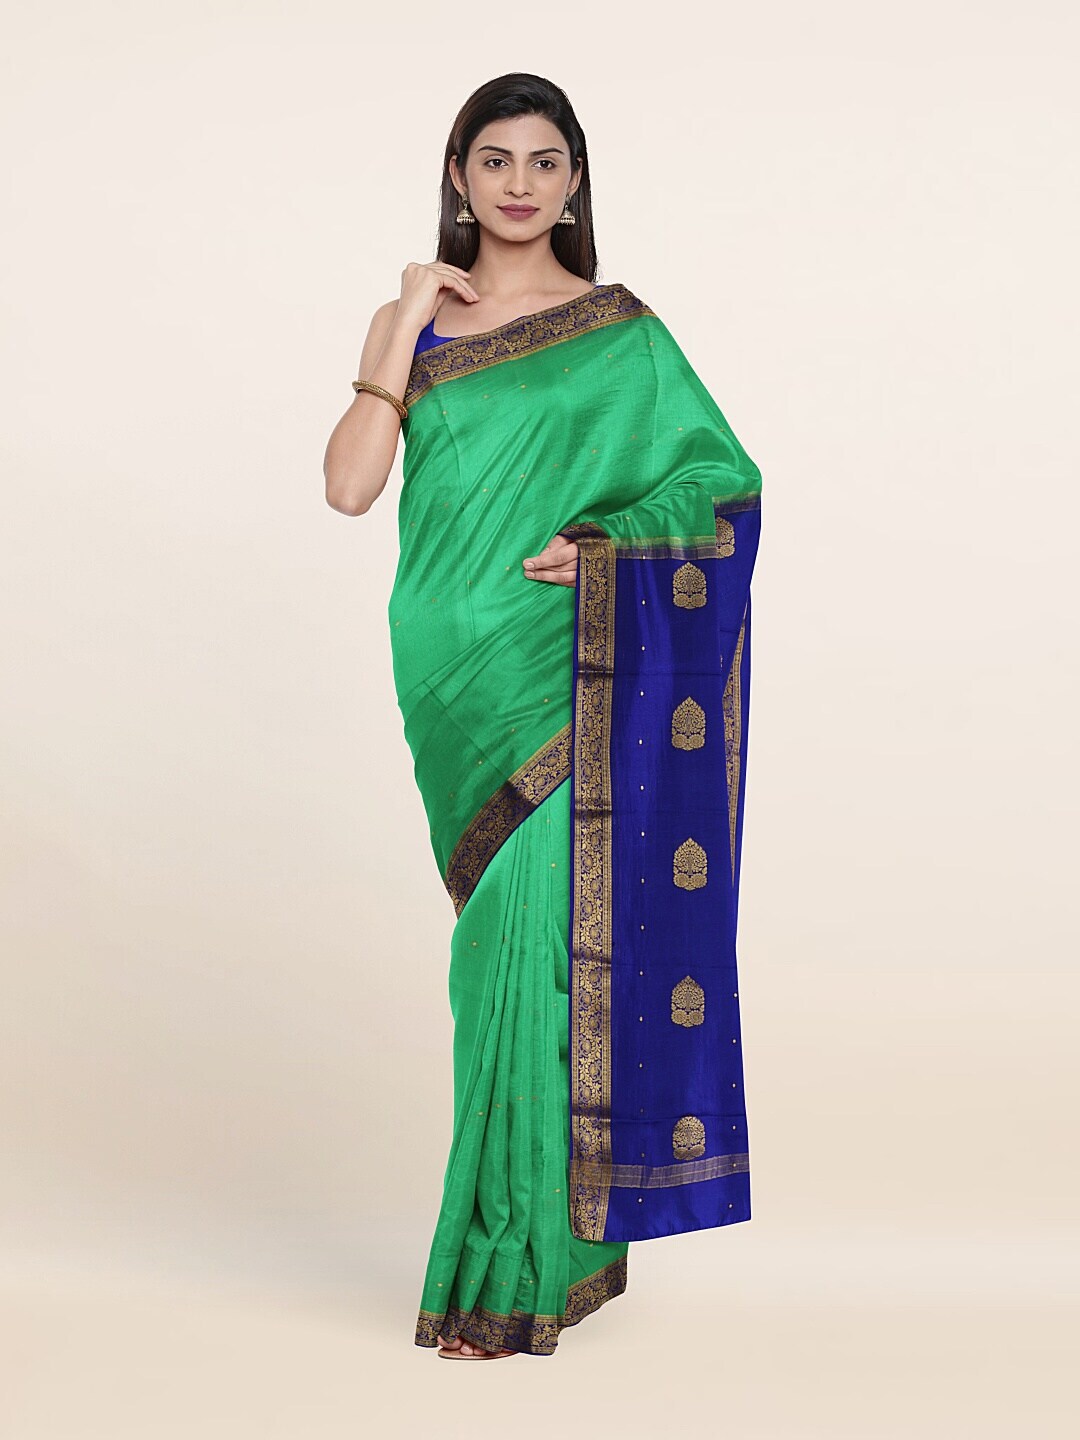 Pothys Green & Blue Woven Design Zari Pure Silk Saree Price in India